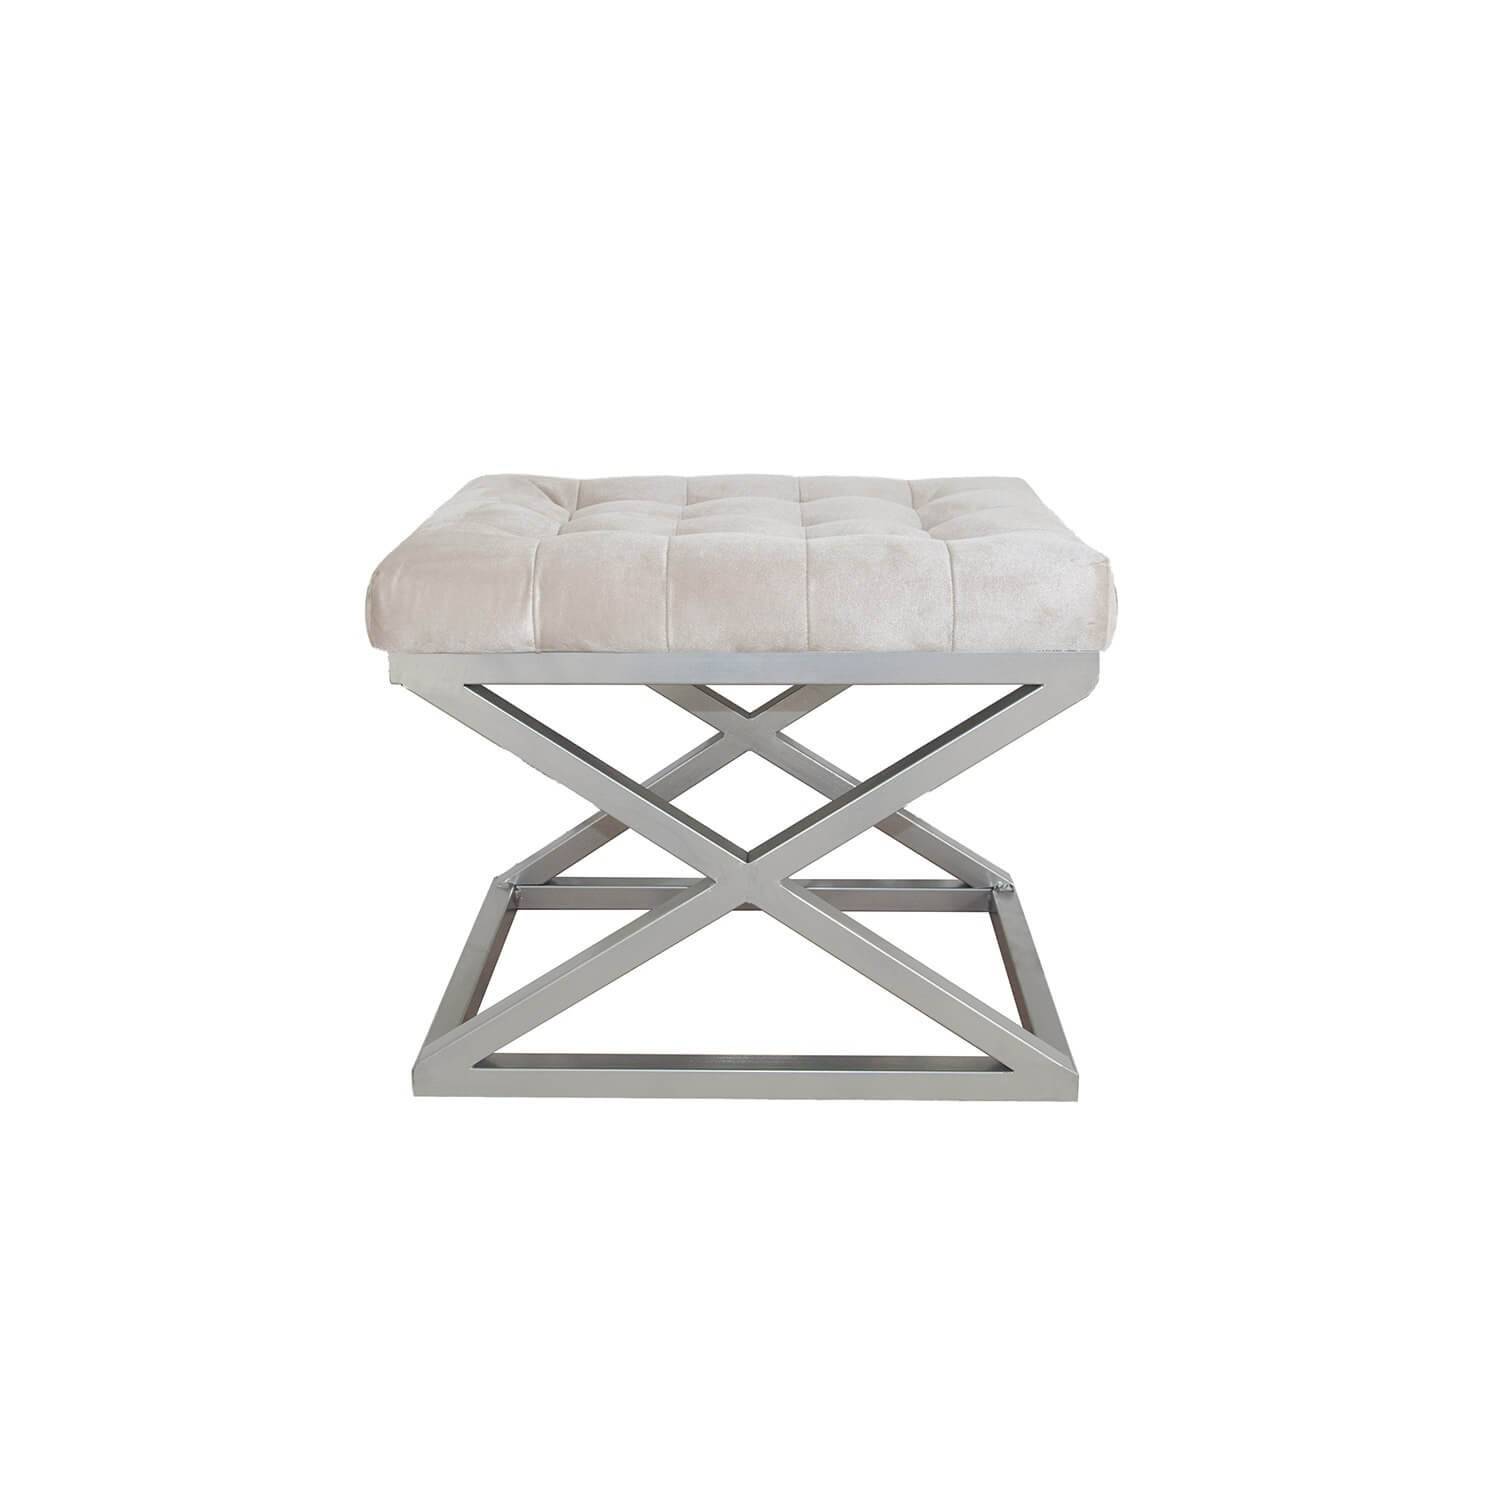 Taburete Ulad de metal plateado y asiento tapizado de terciopelo blanco sucio